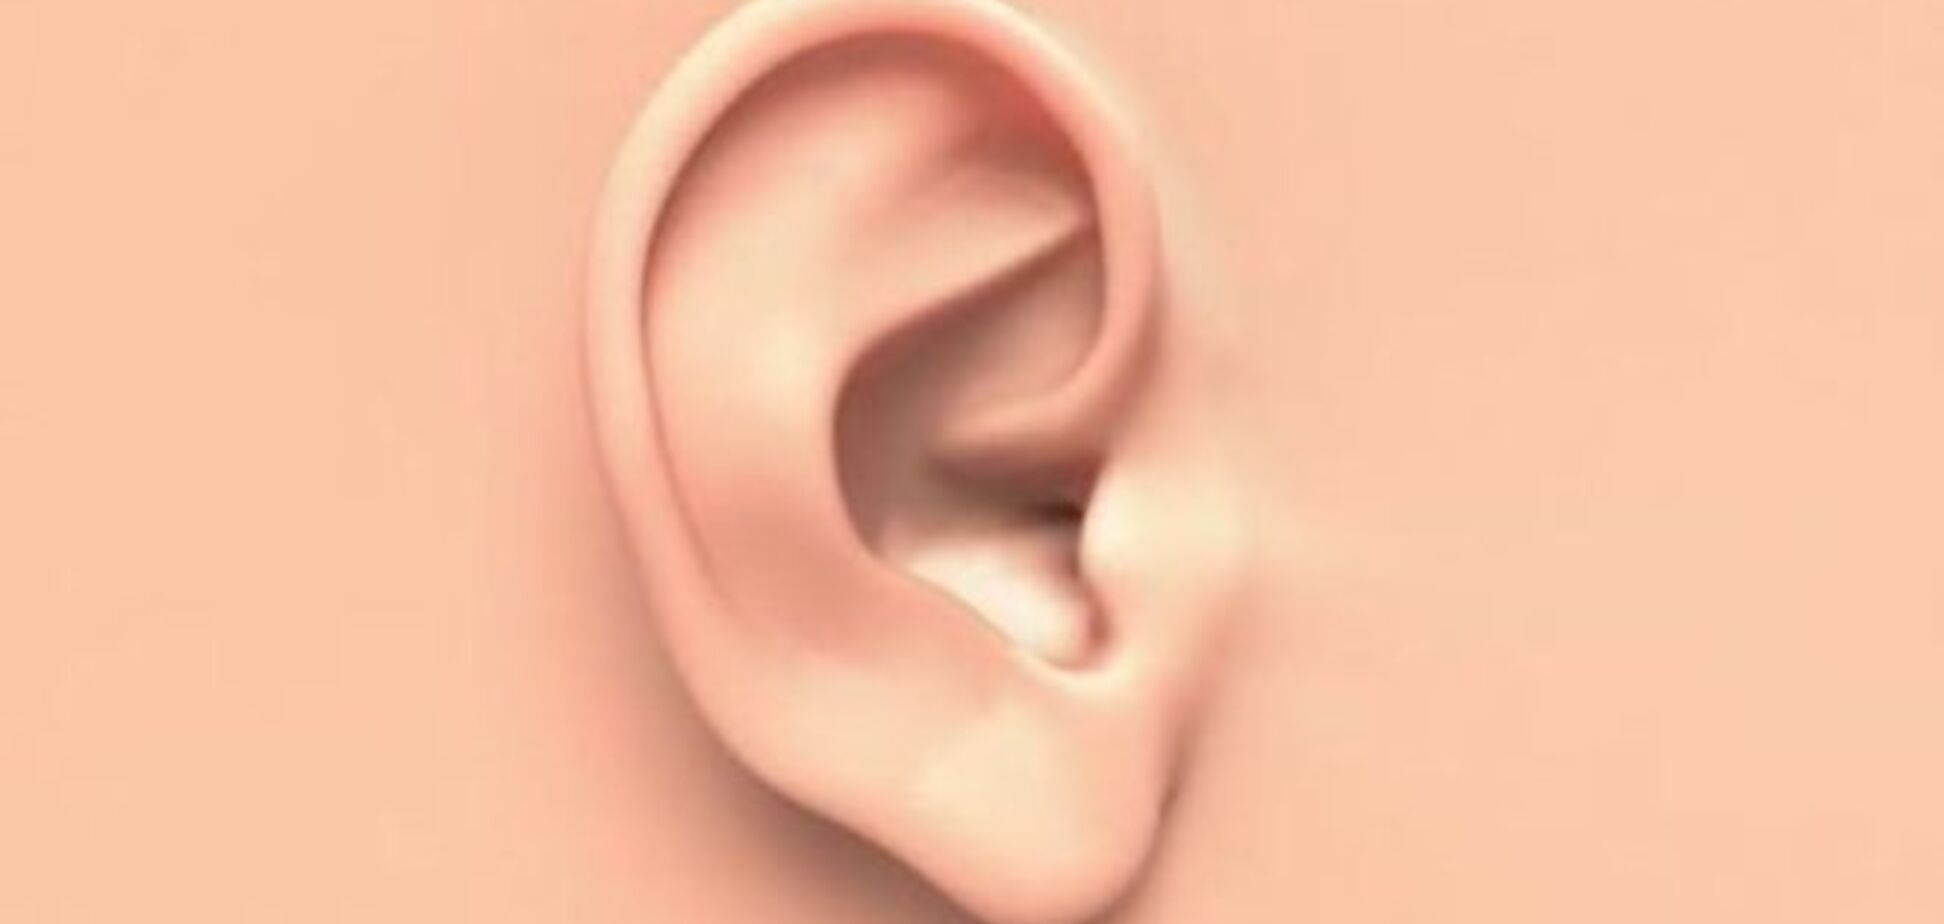 5 вещей, которые уши могут 'сказать' о здоровье человека